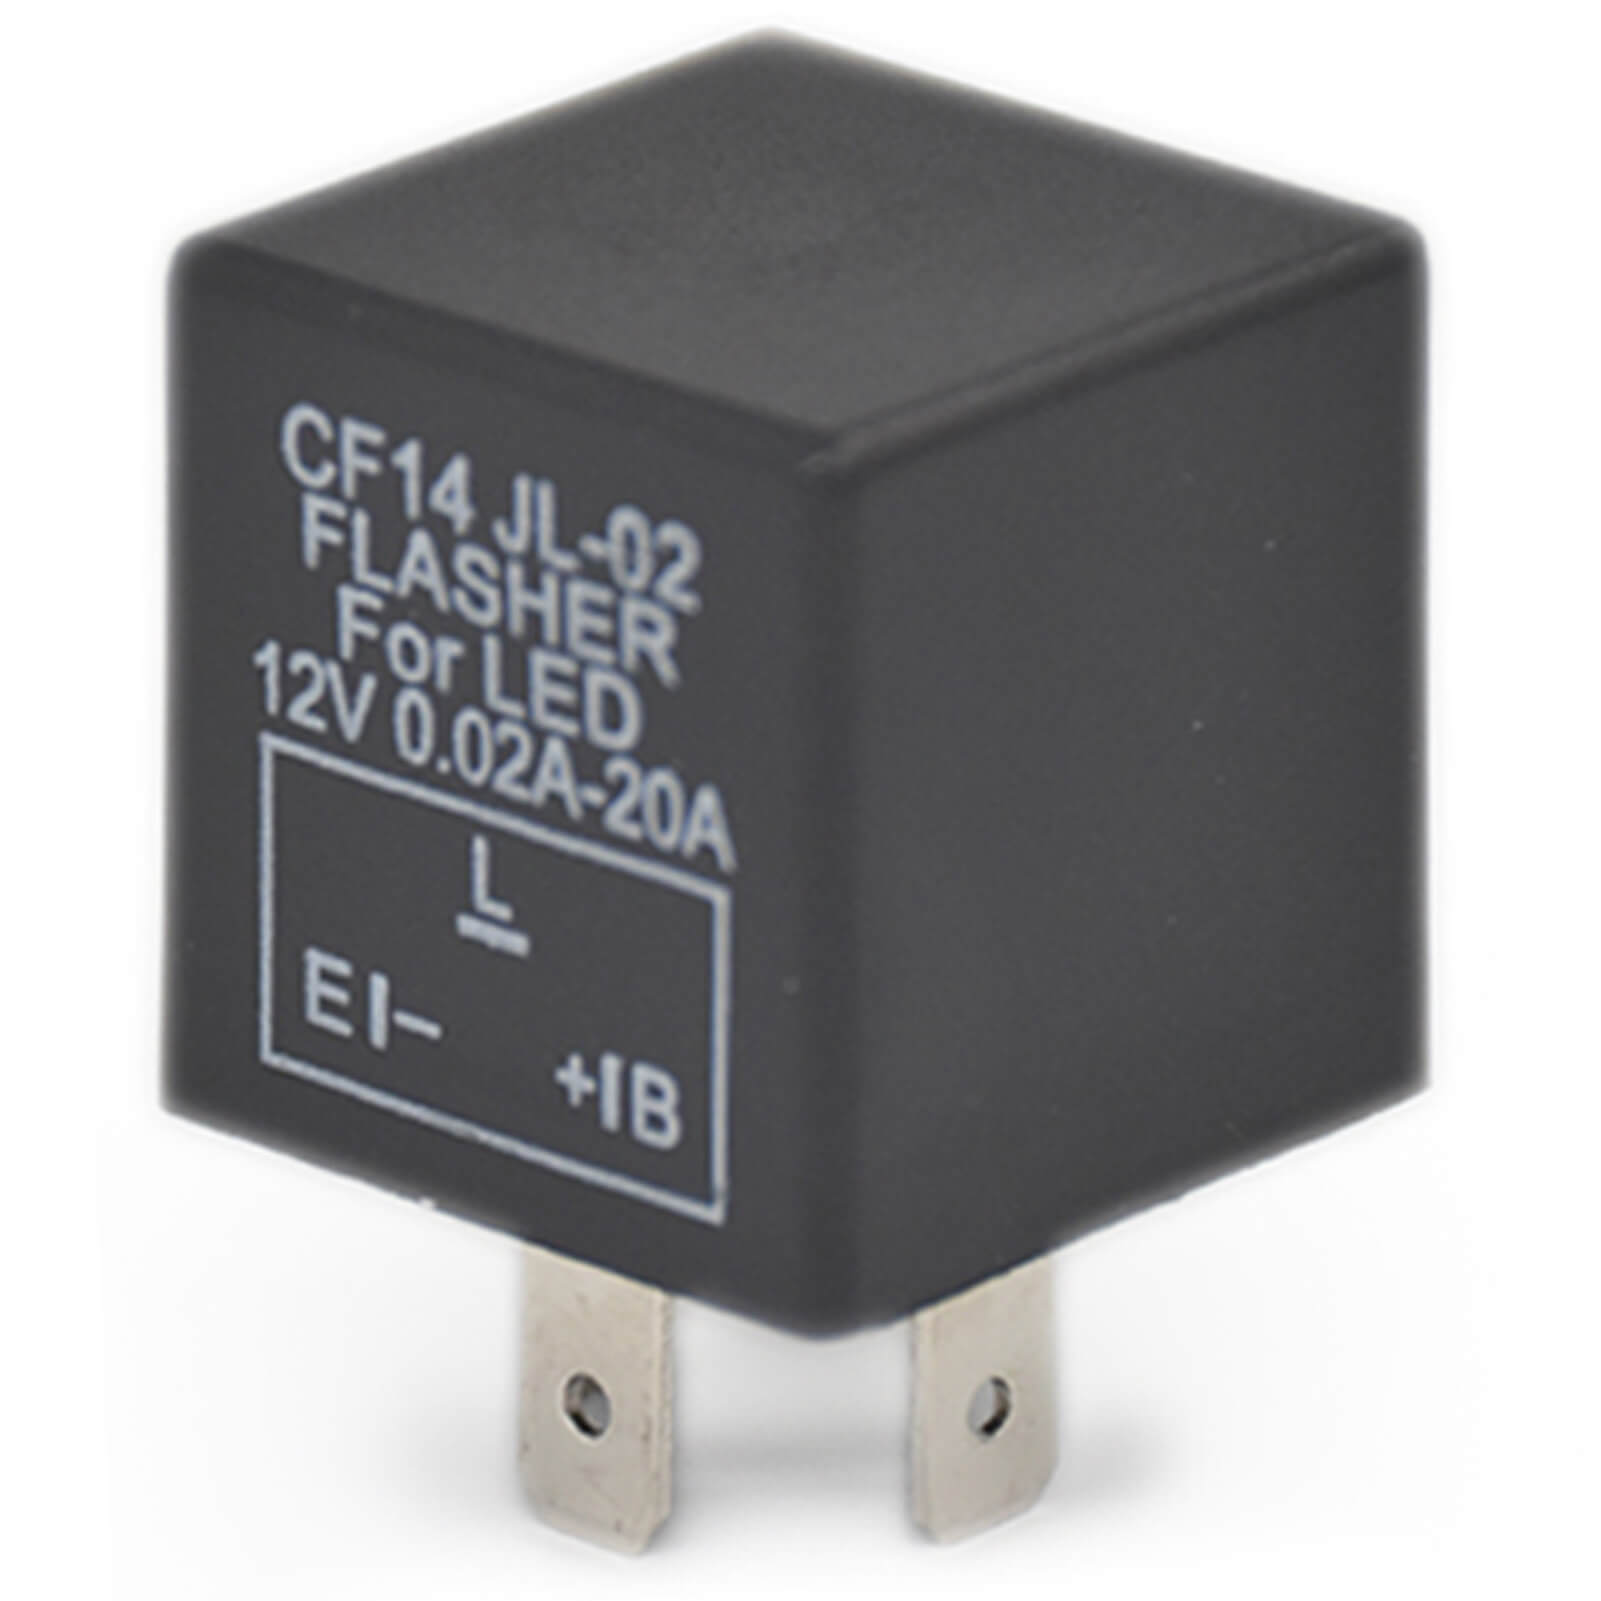 3-Pin LED Flasher Relay CF14 JL-02